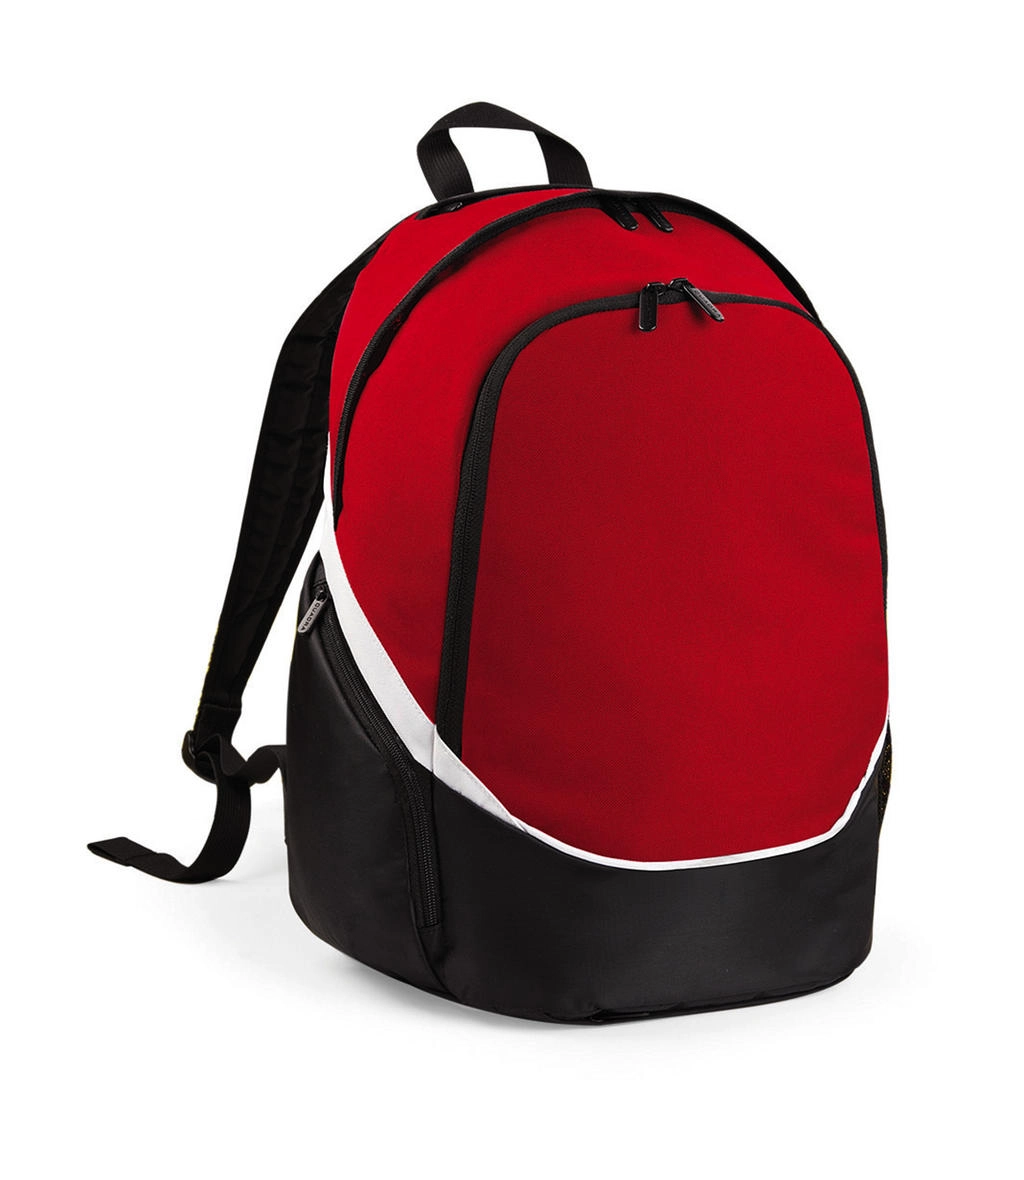 Pro Team Backpack zum Besticken und Bedrucken in der Farbe Classic Red/Black/White mit Ihren Logo, Schriftzug oder Motiv.